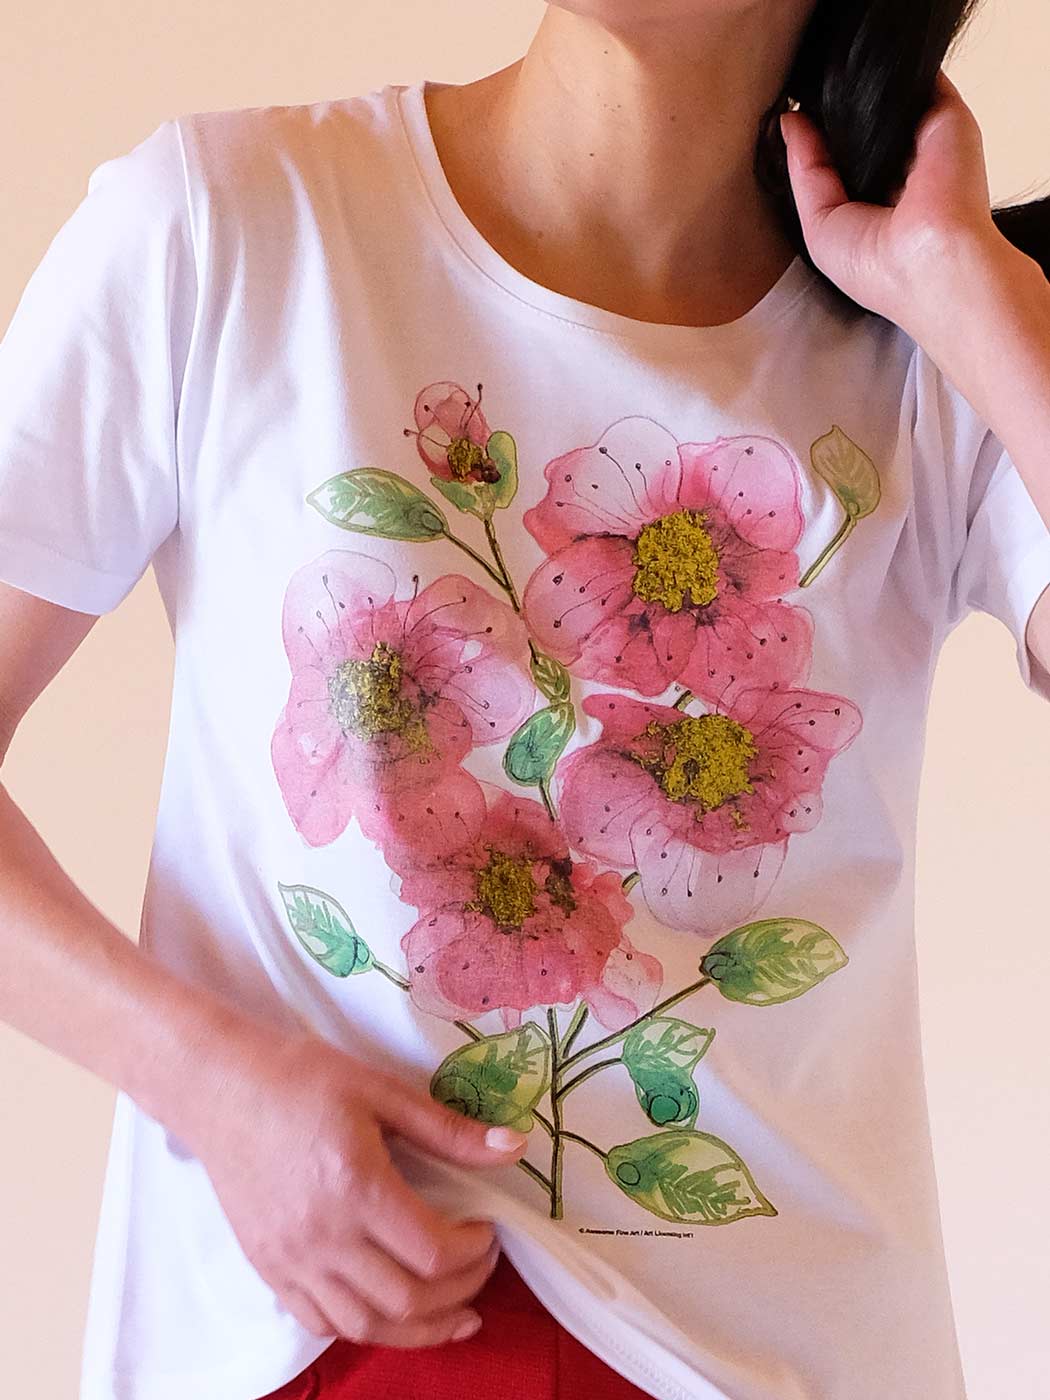 100% Cotton Floral Bouquet T-shirt